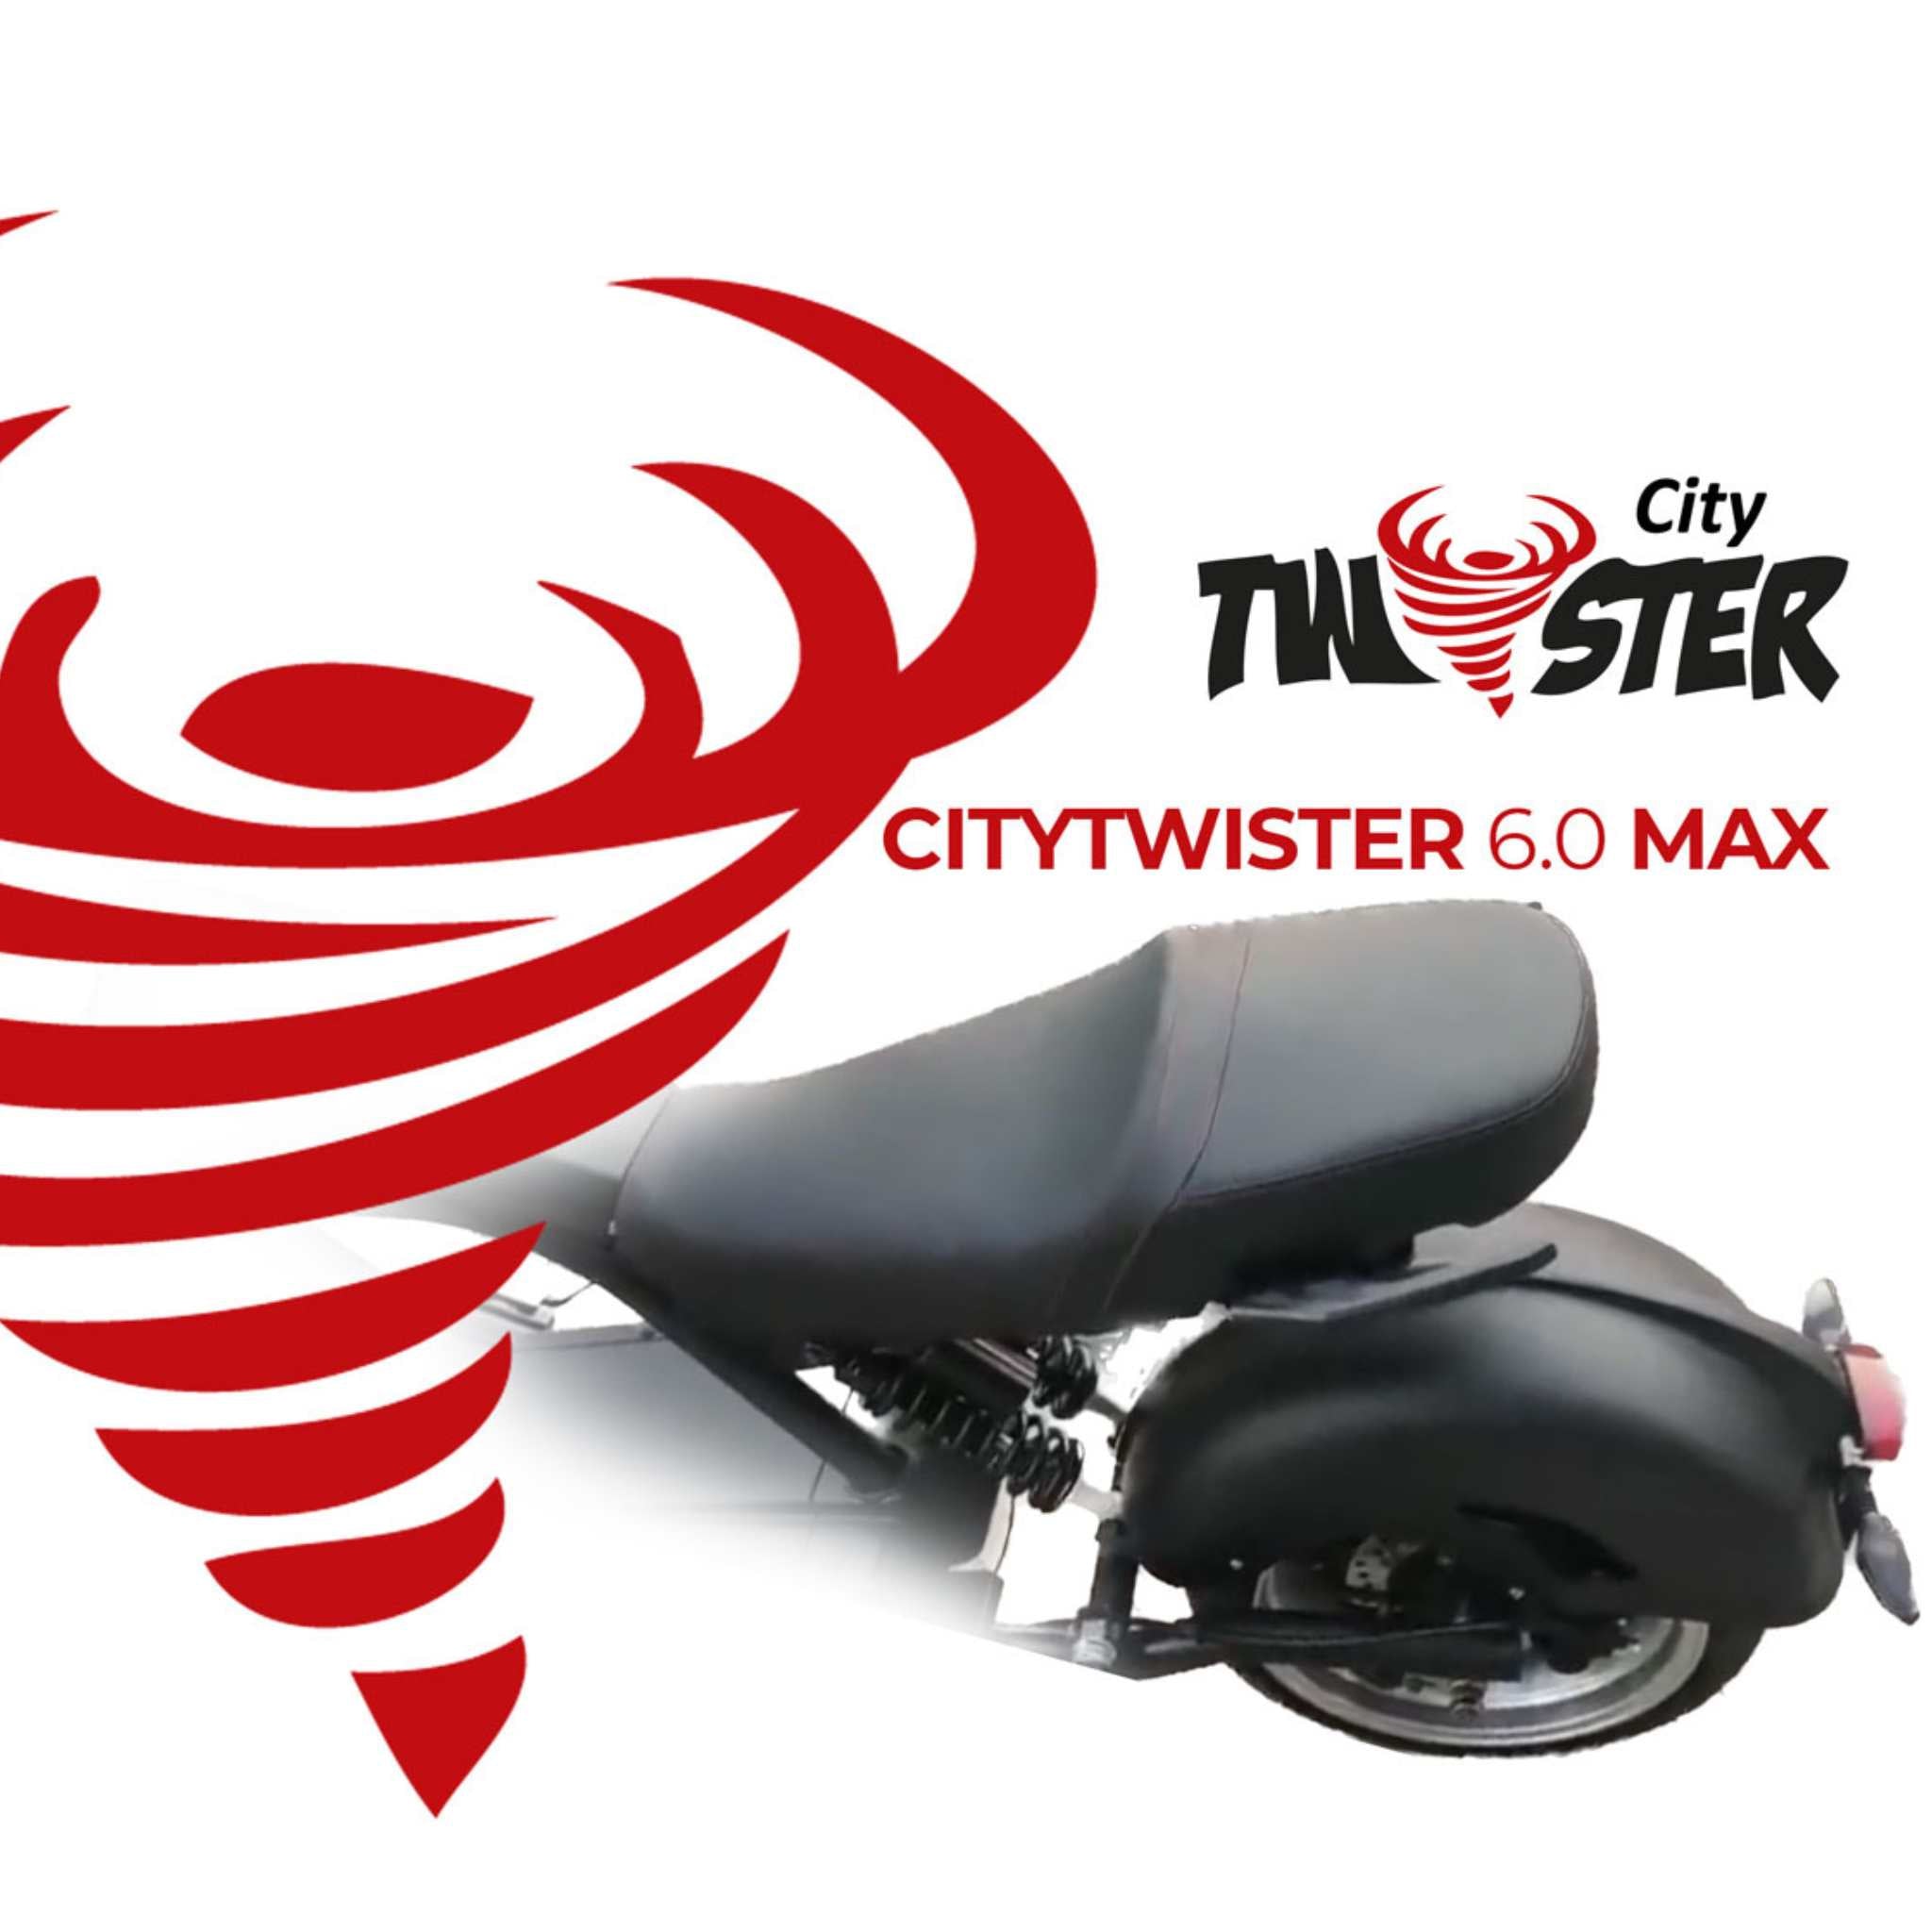 E-Chopper: CityTwister 6.0 MAX DUO 80 km/h - Das Original! -